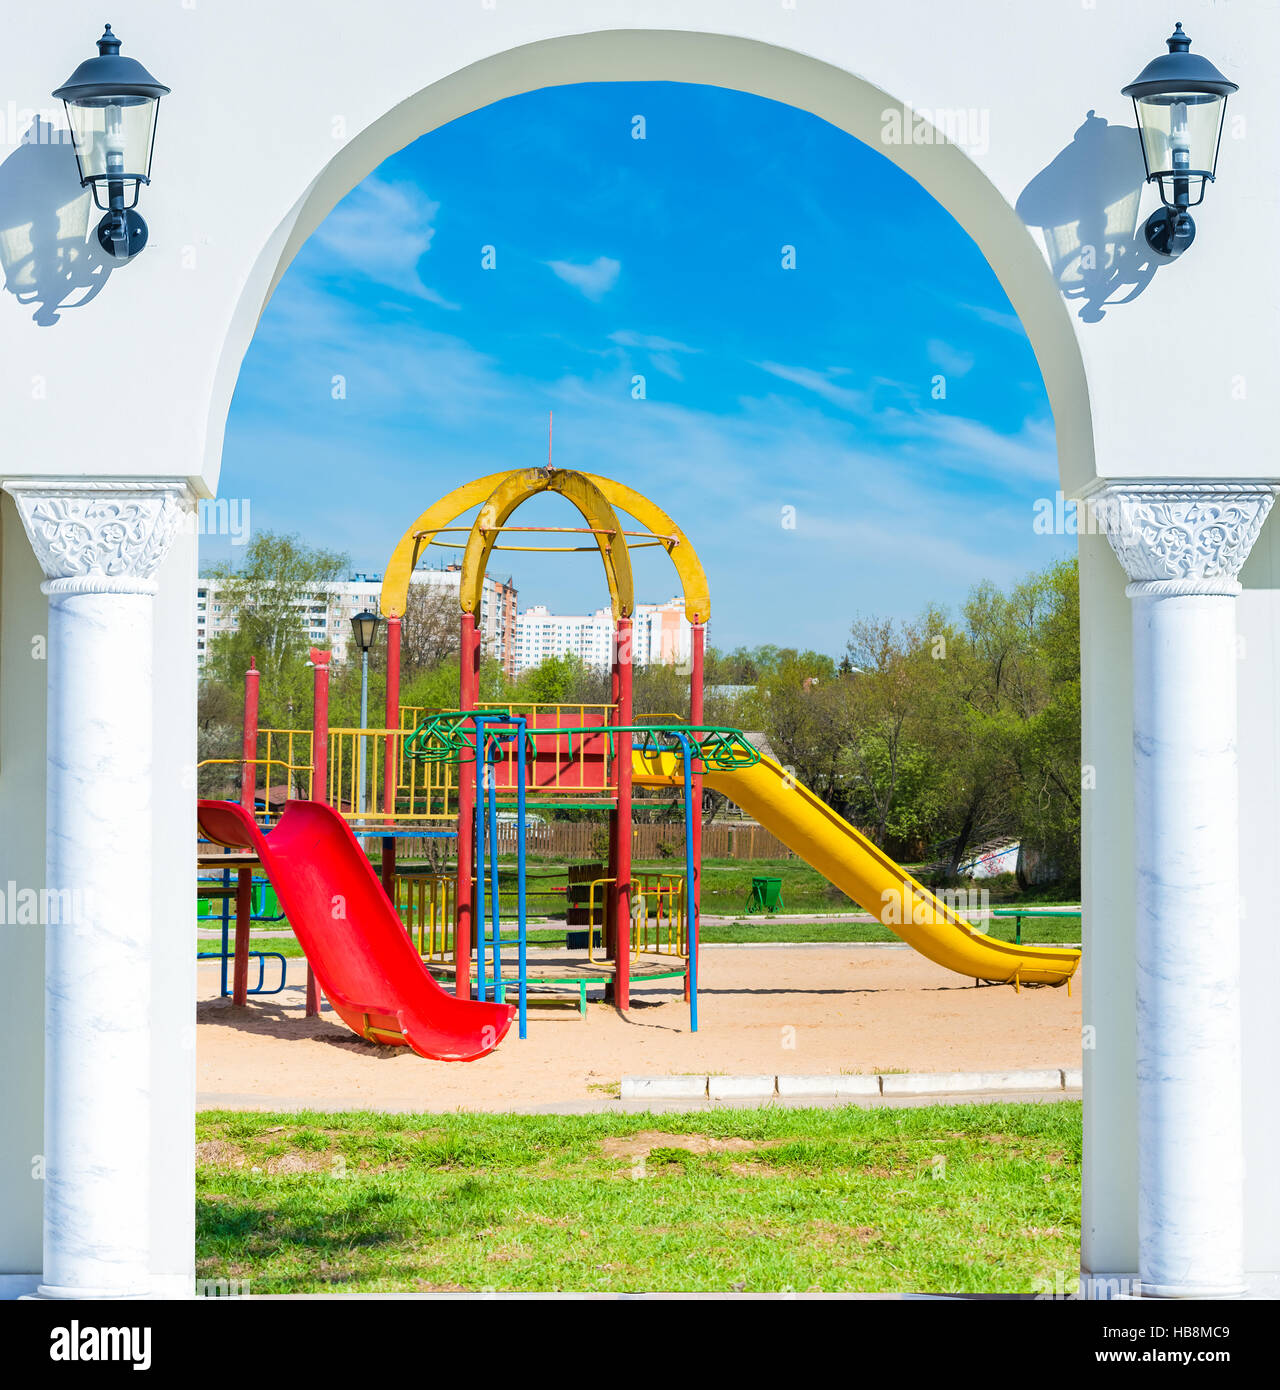 Parco giochi aperto immagini e fotografie stock ad alta risoluzione - Alamy